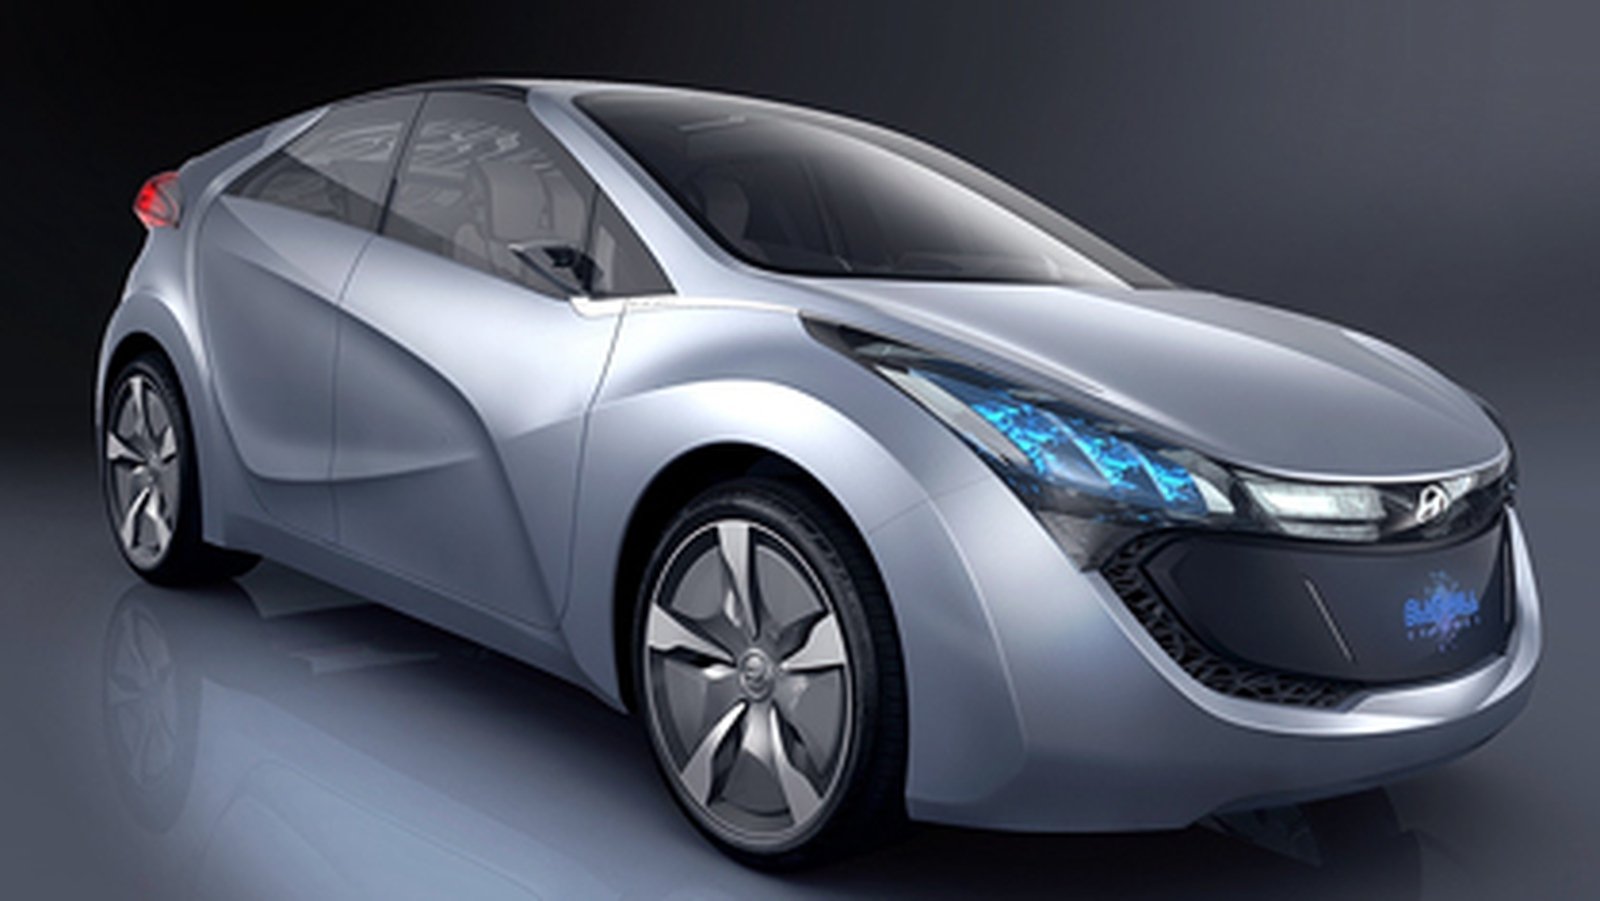 Hyundai unveils new concept car